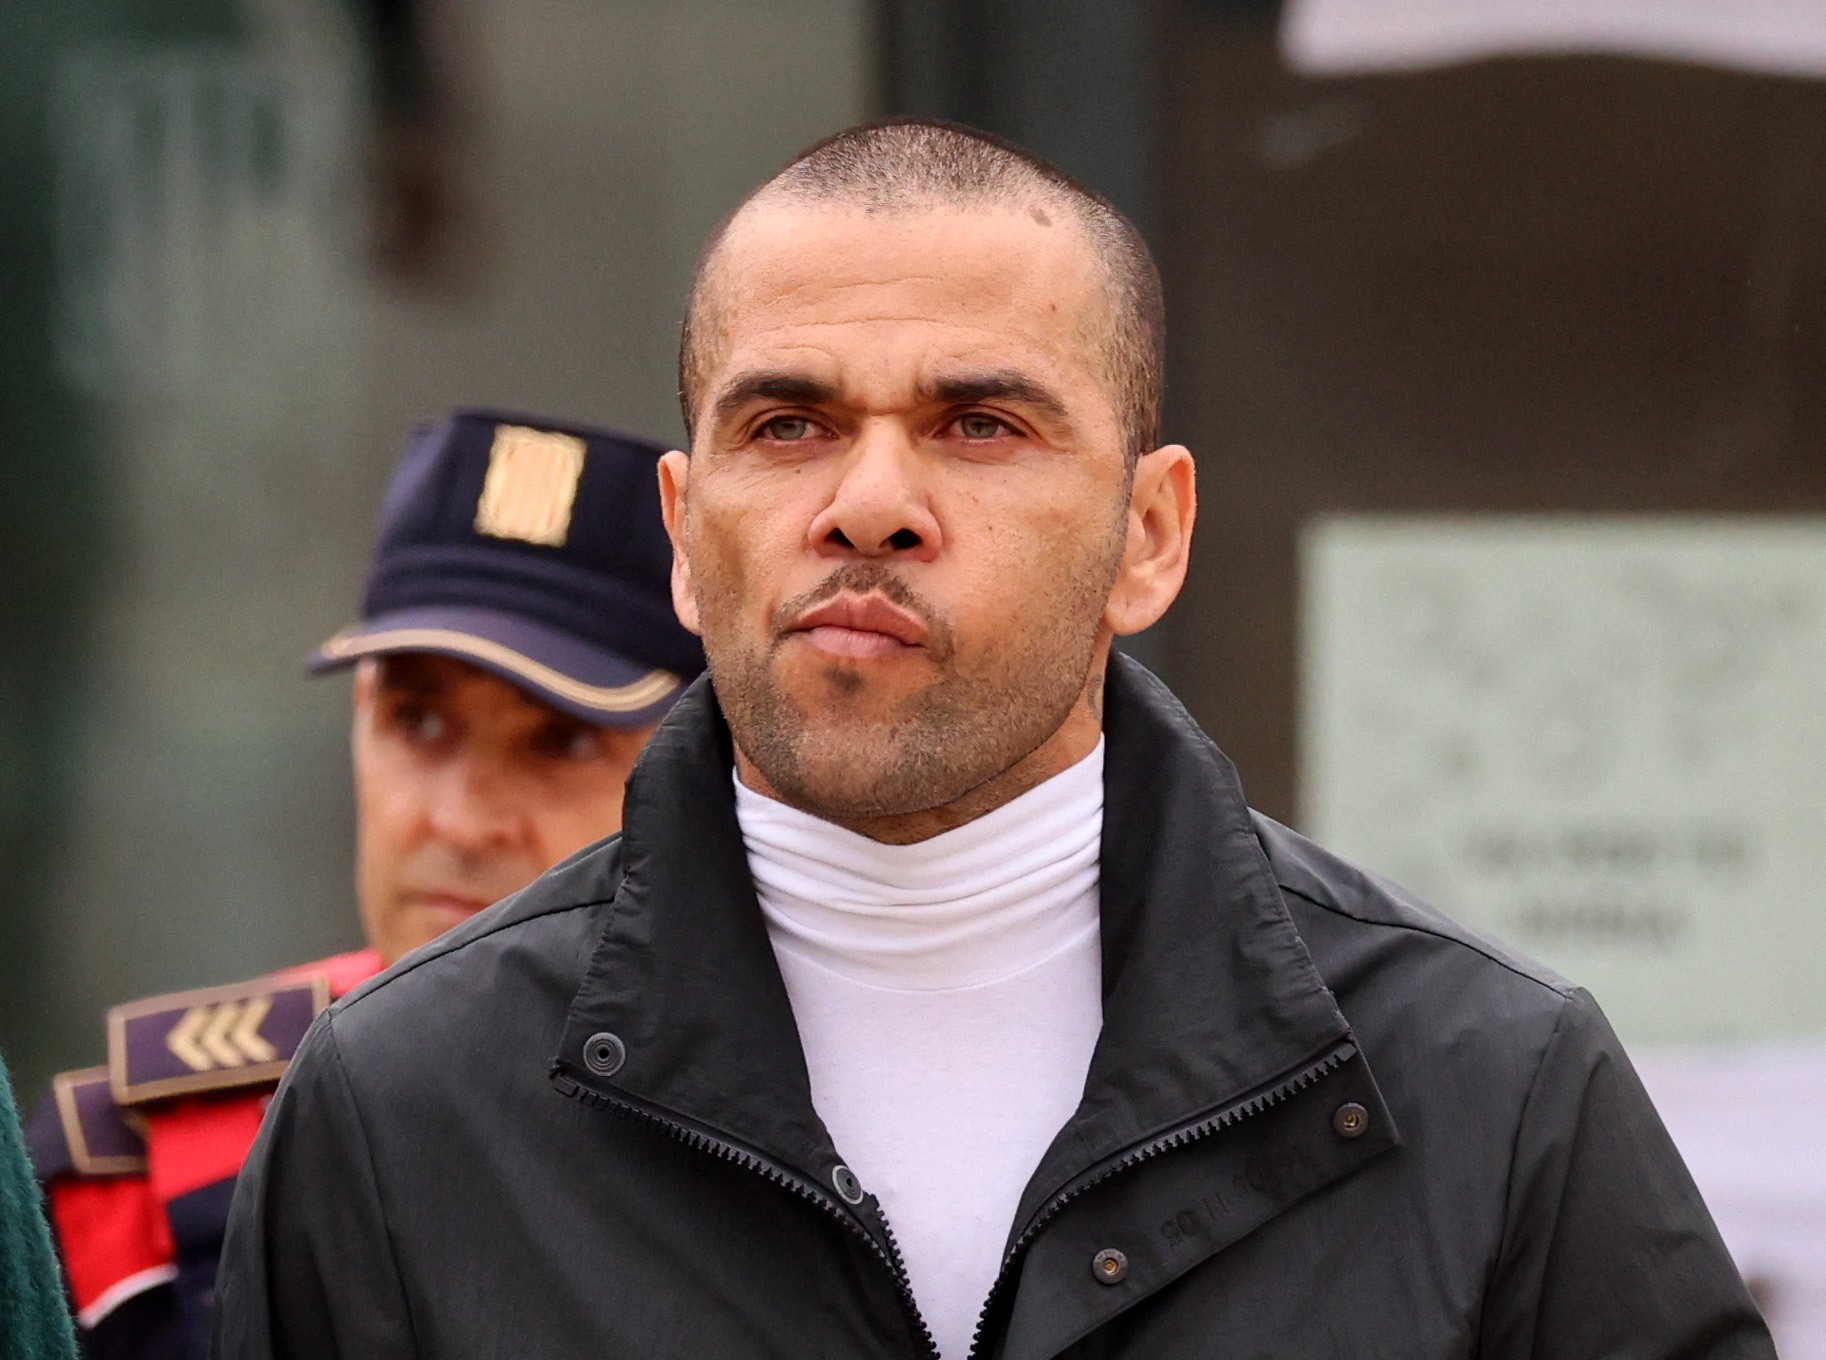 Daniel Alves abre negócio para agenciar jogadores após sair da prisão, diz jornal